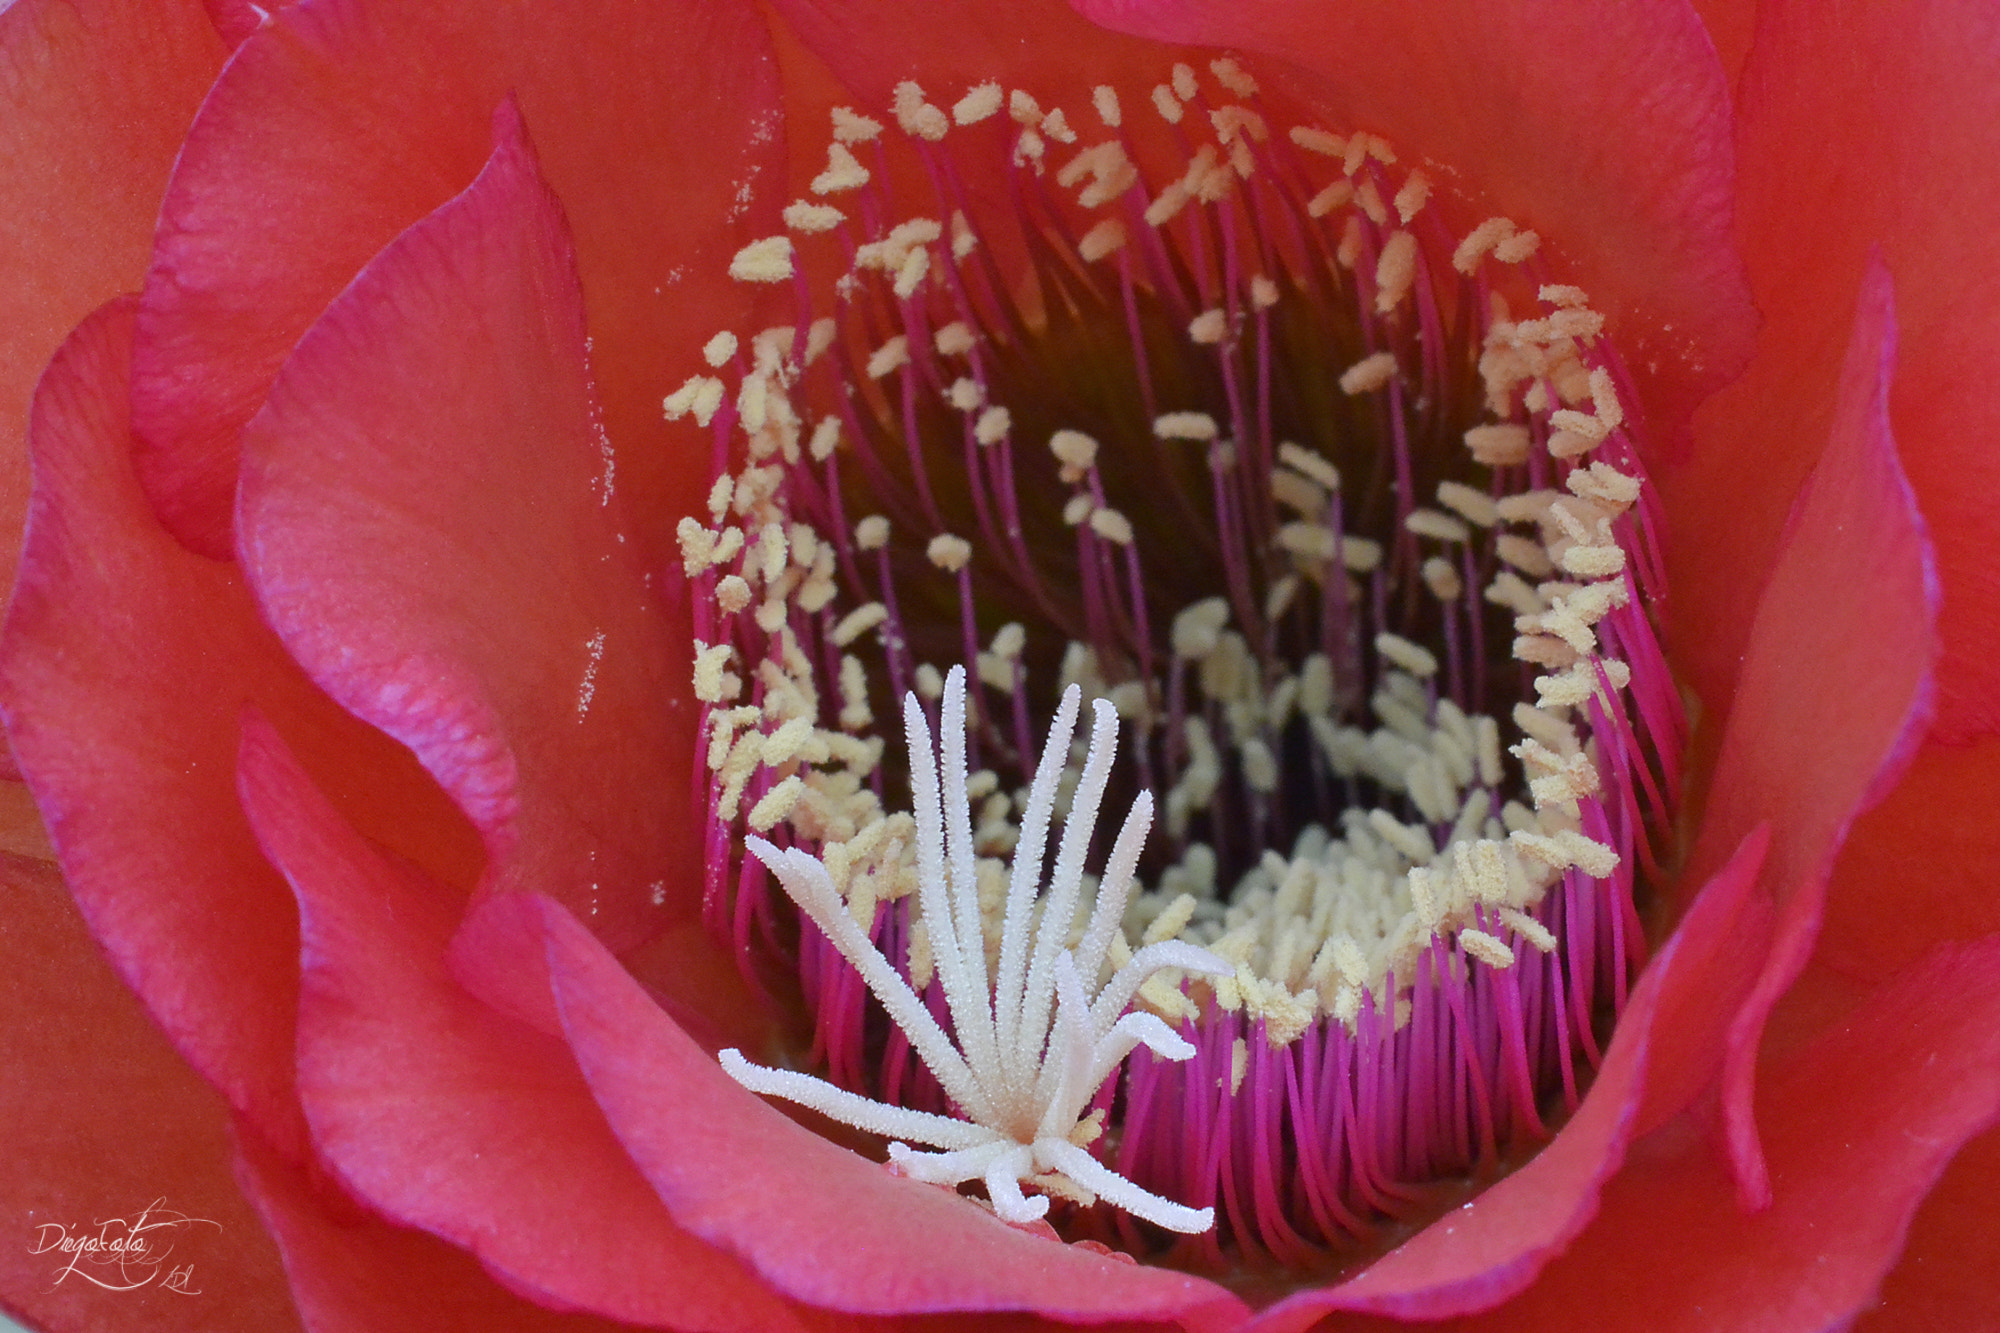 40mm f/2.8G sample photo. Flor de trichocereus grandiflorus photography